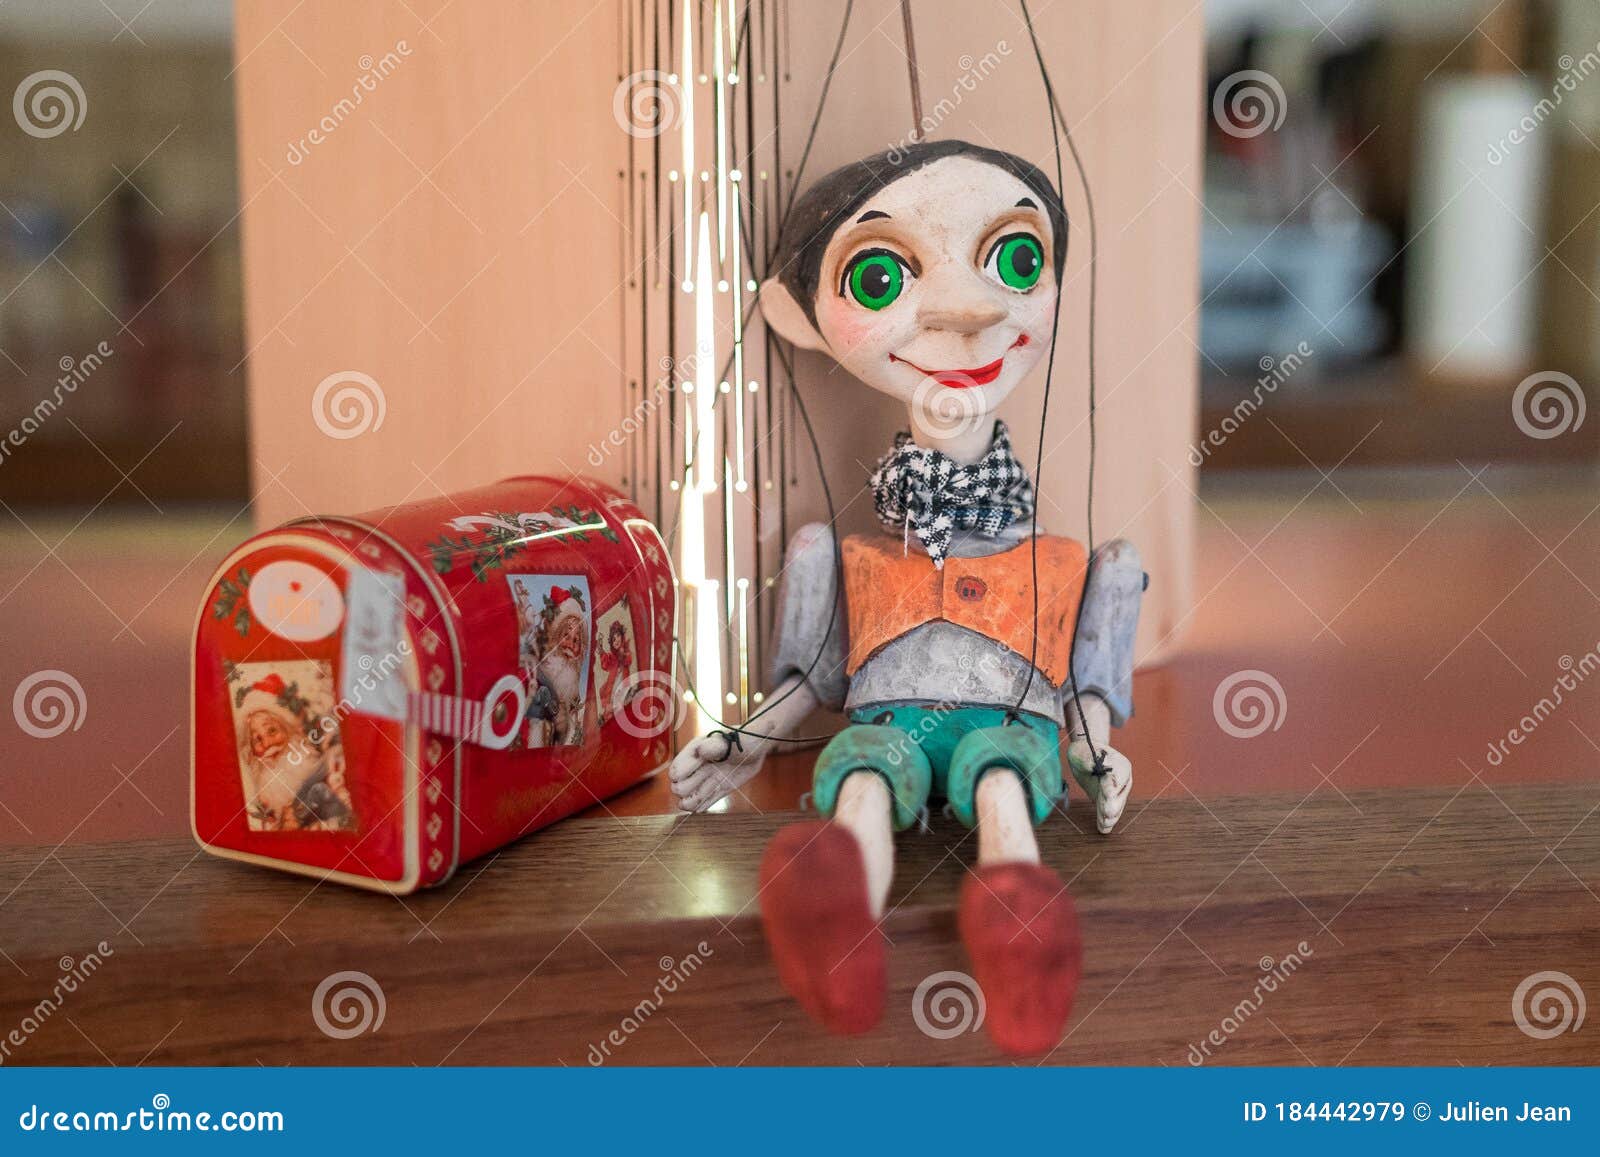 Pinocchio Cartoon Puppet Czech Hand-made Marionette From Prague 